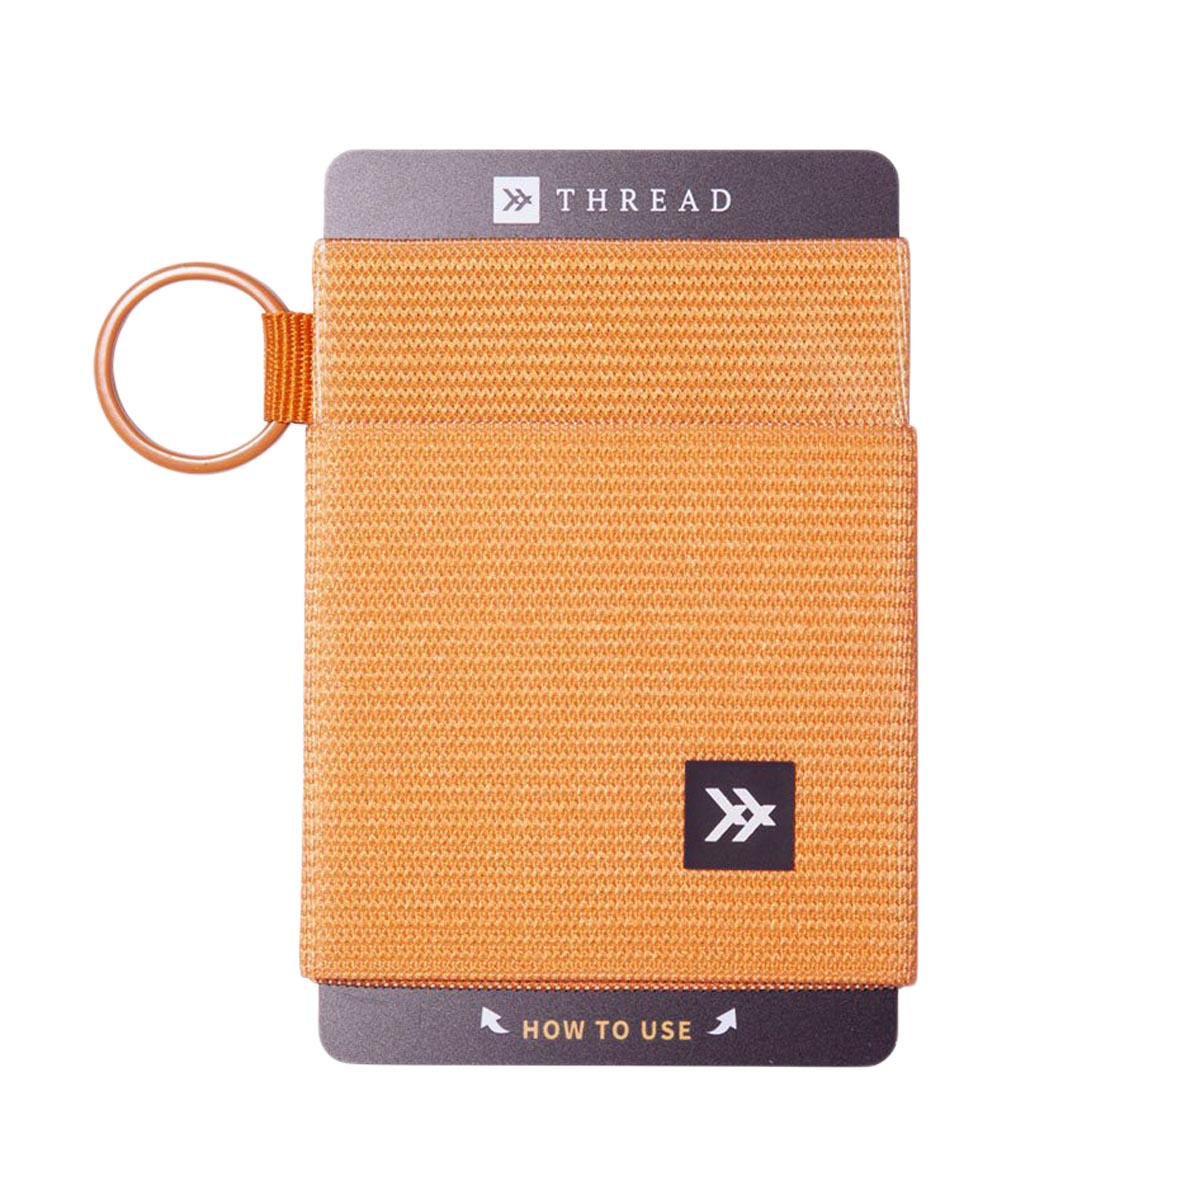 Thread Elastic Wallet - Marigold image 1